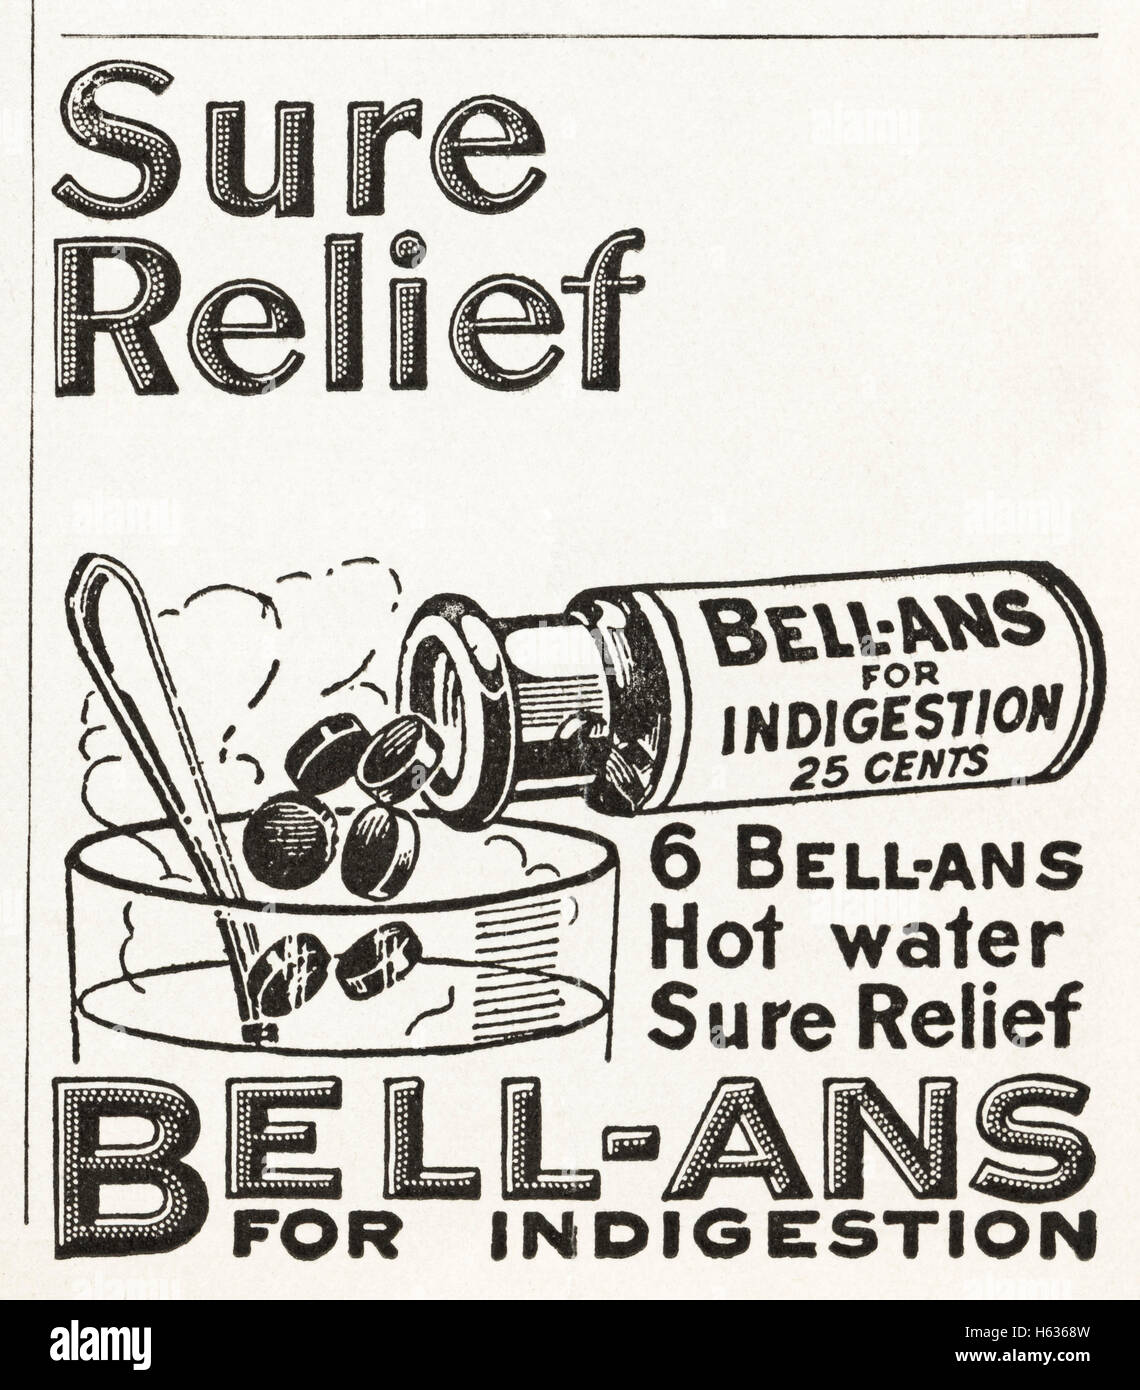 1920er Jahre Werbung Werbung aus original alten Vintage American datiert  1921 Zeitschriftenwerbung Bell-Ans-Tabletten zur Linderung von  Verdauungsstörungen Stockfotografie - Alamy